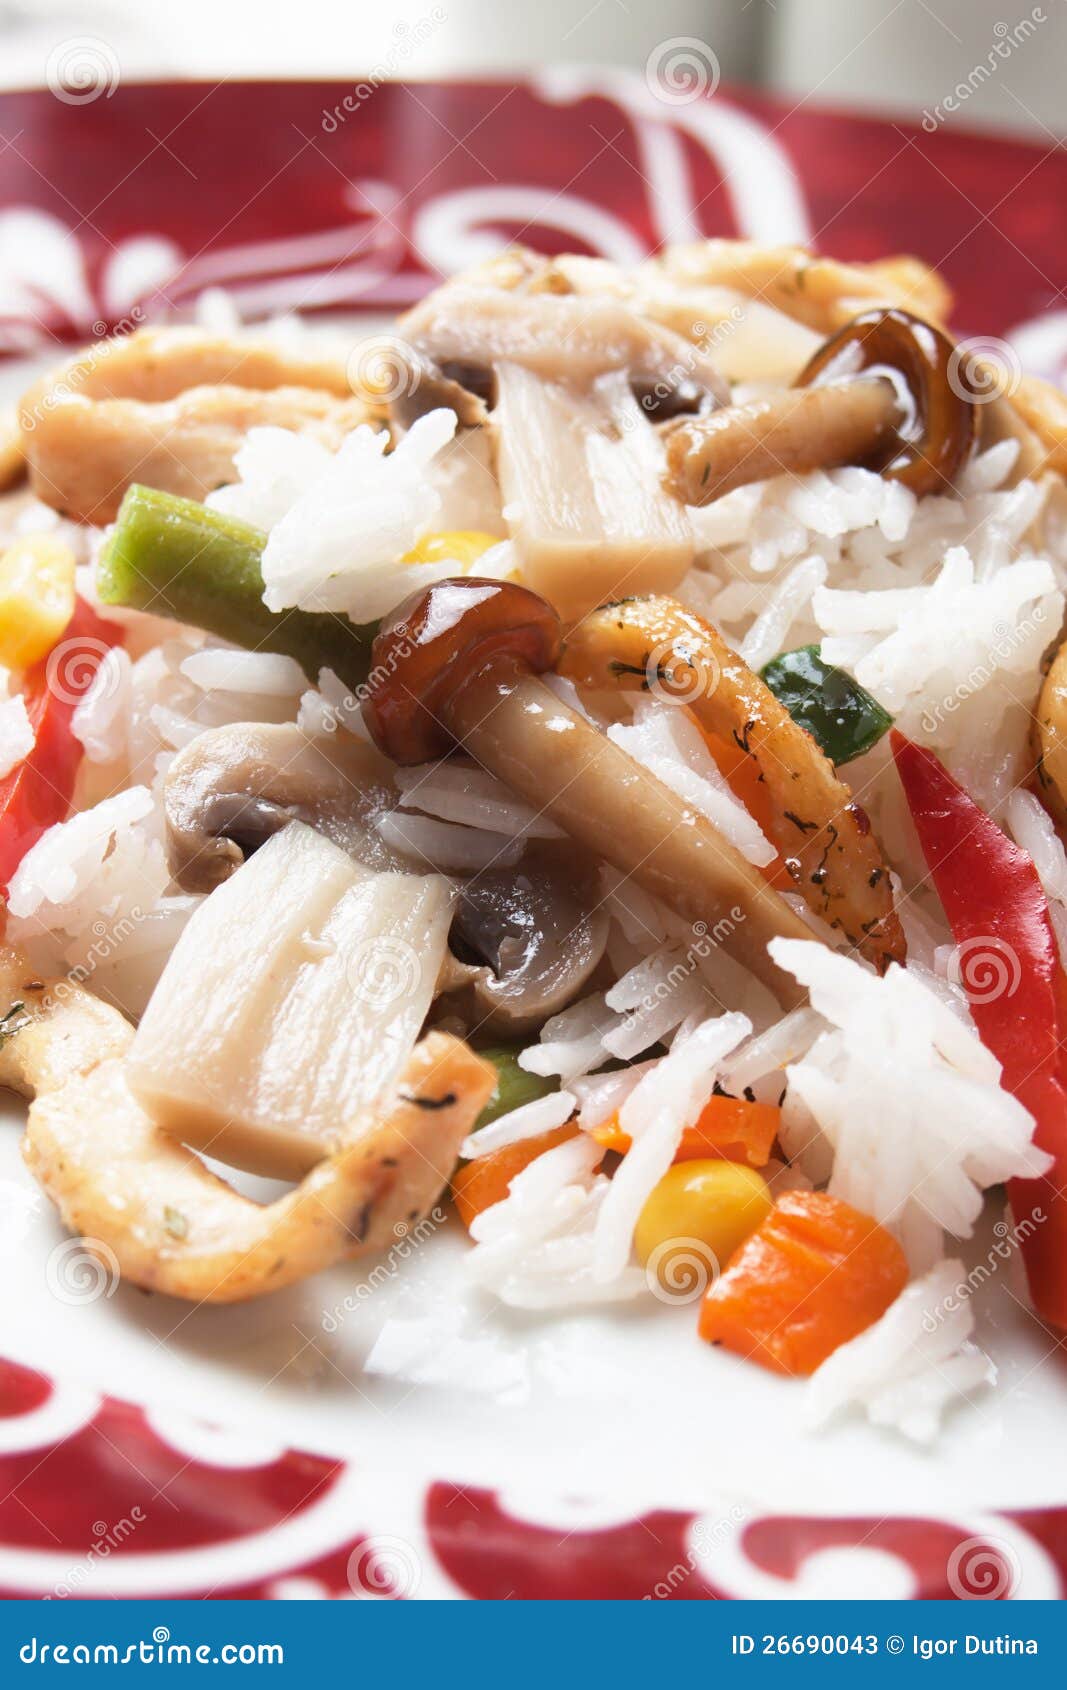 与辣鸡和蘑菇的意大利煨饭. 意大利煨饭、煮熟的米用蘑菇和辣鸡肉